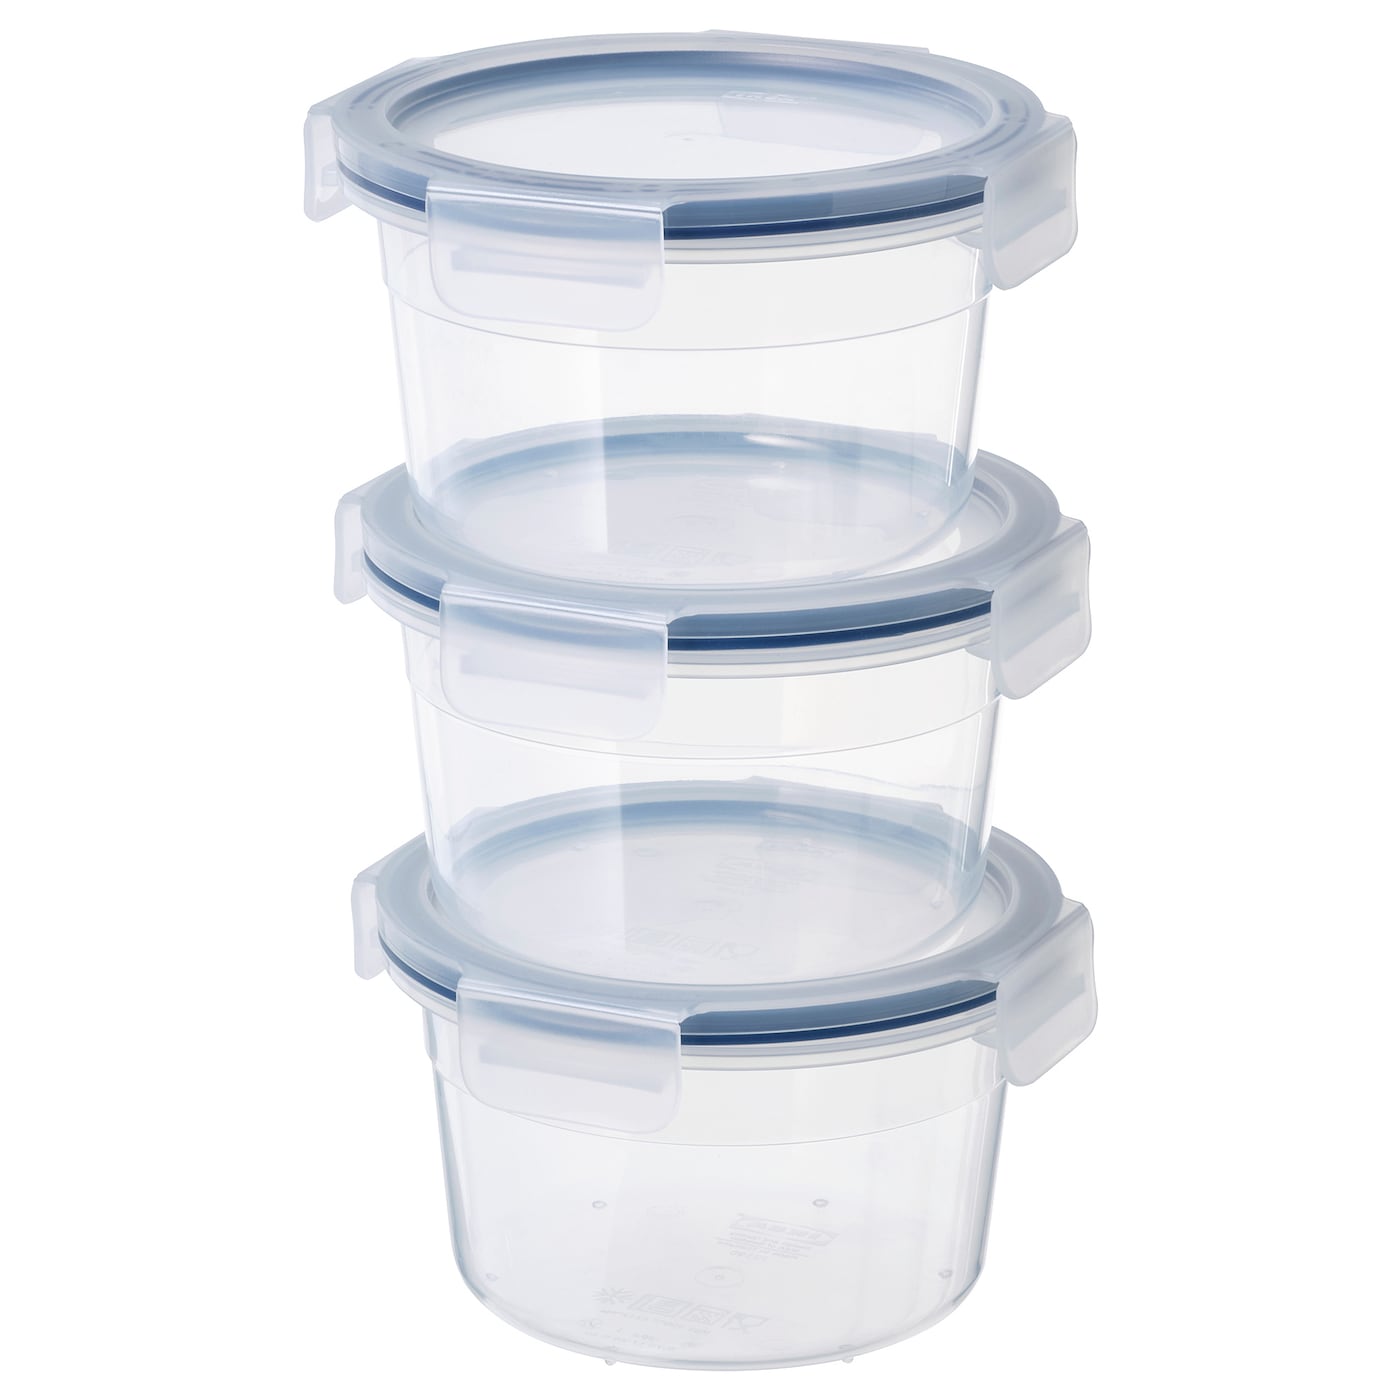 Набор контейнеров для продуктов с крышкой, 3 шт. - IKEA 365+, 0.75 л, пластик, ИКЕА 365+